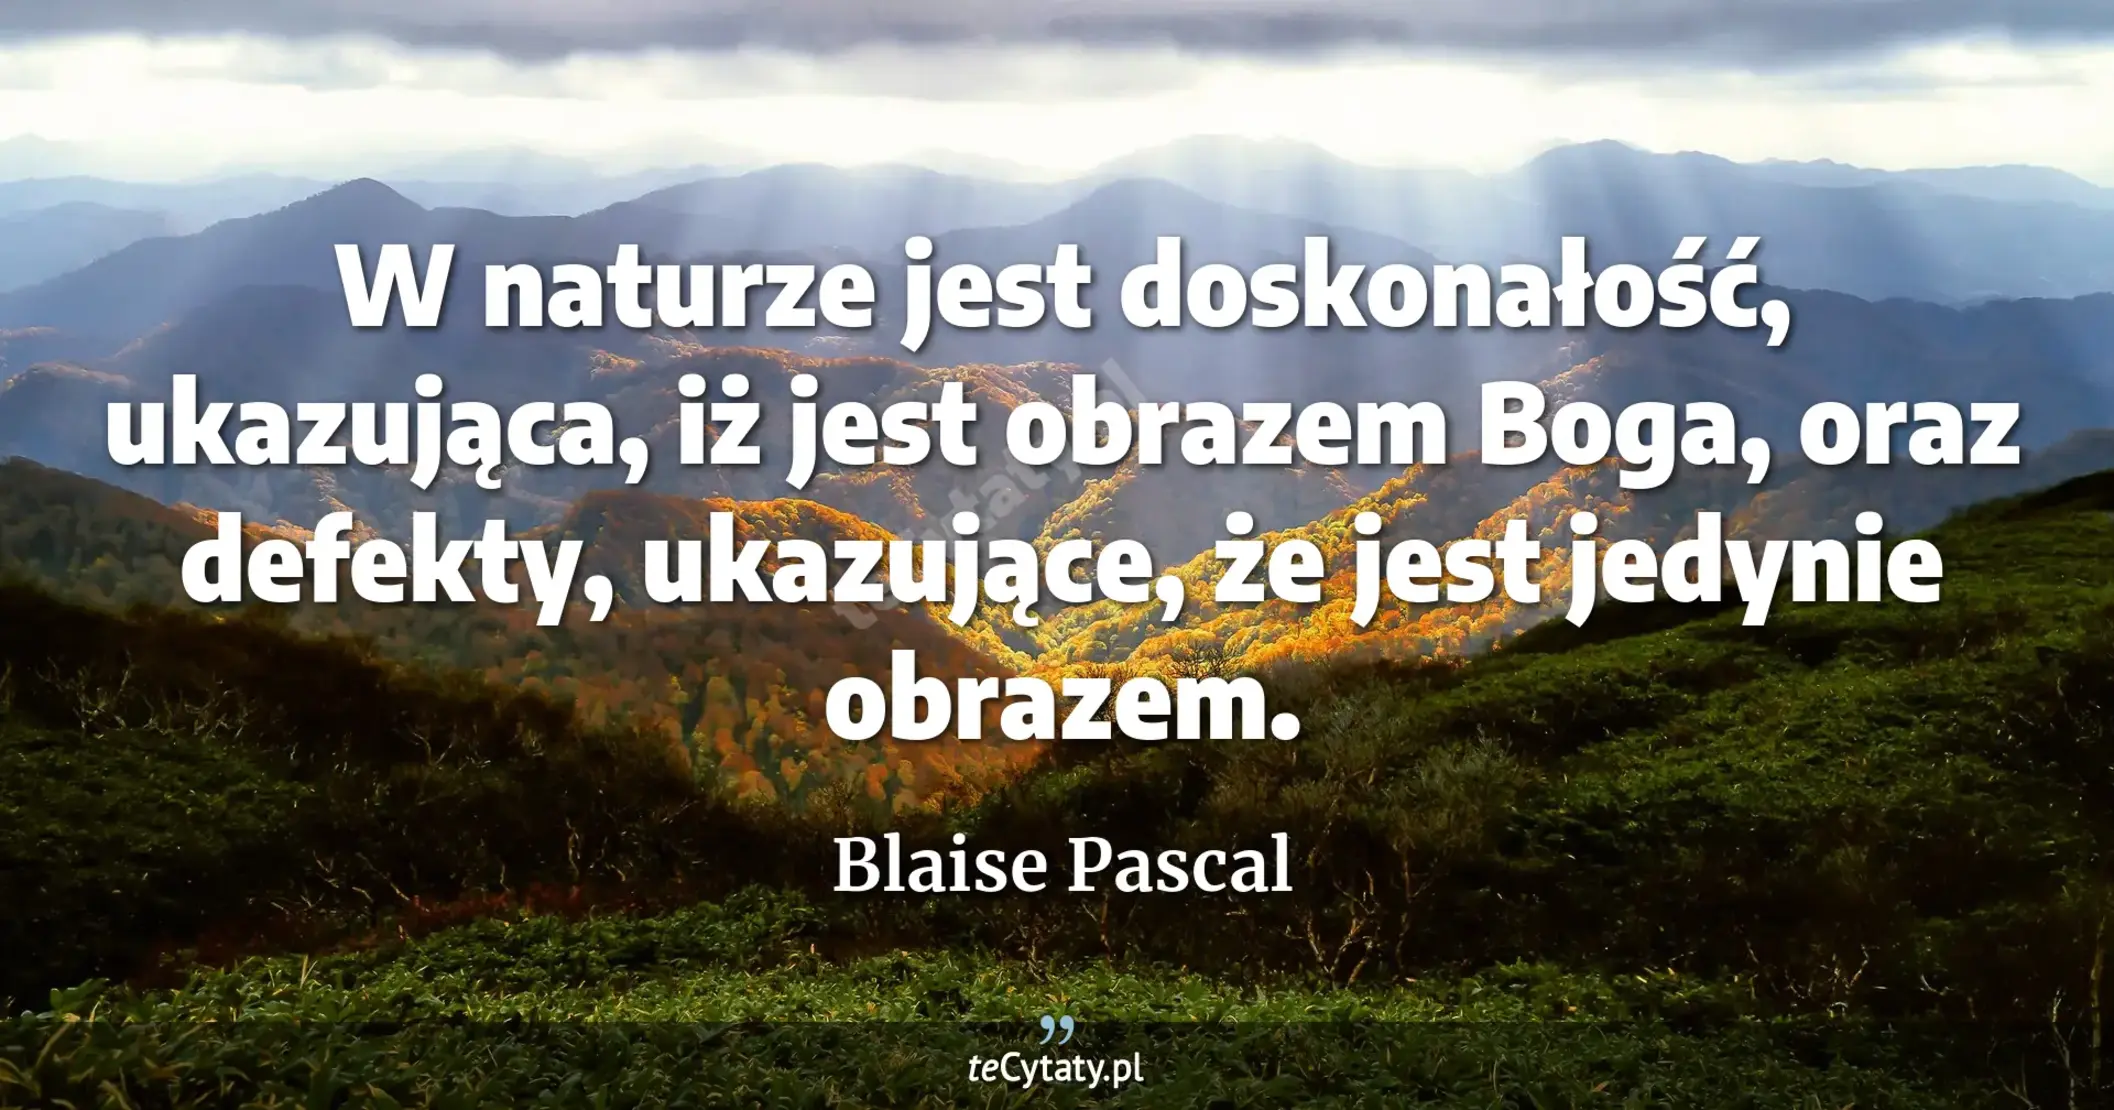 W naturze jest doskonałość, ukazująca, iż jest obrazem Boga, oraz defekty, ukazujące, że jest jedynie obrazem. - Blaise Pascal